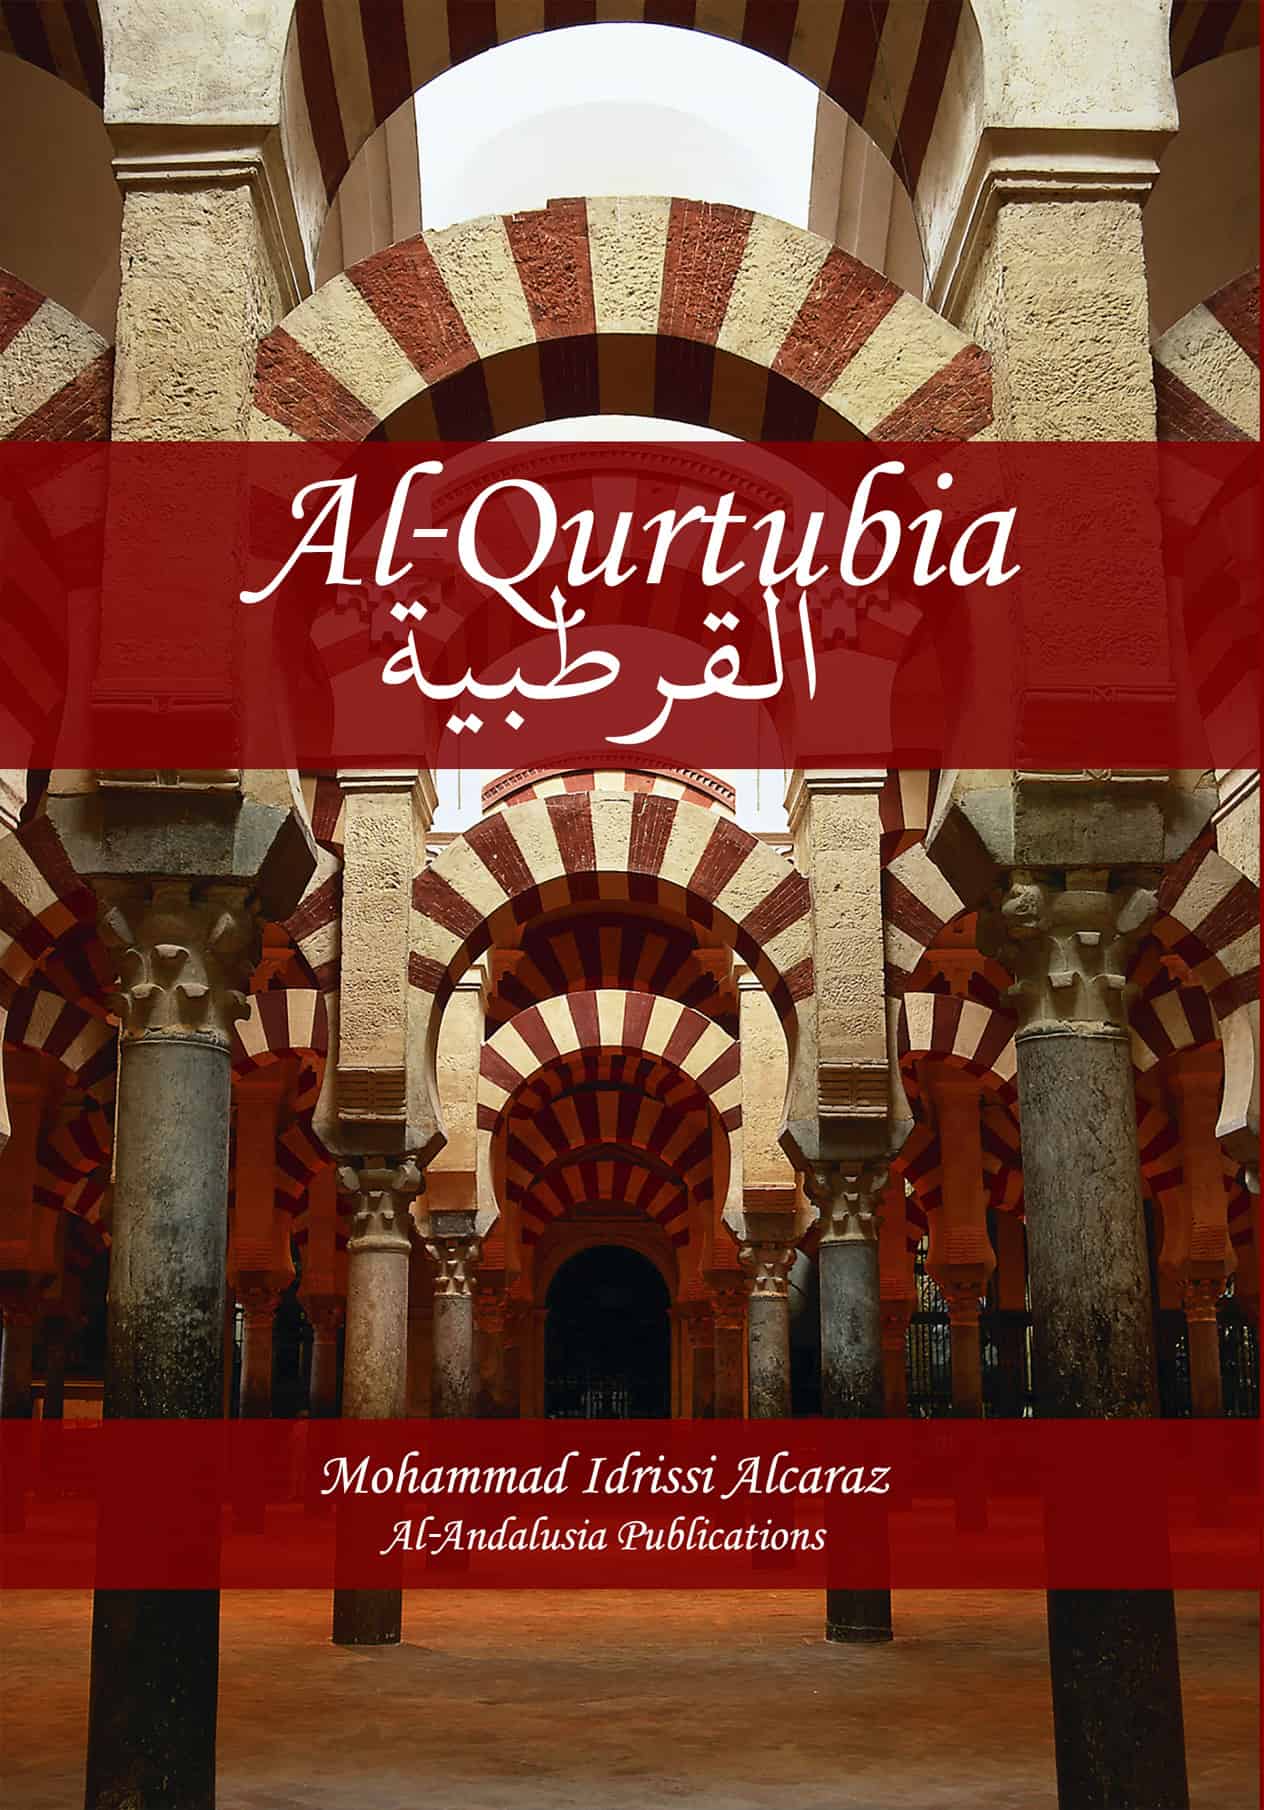 Al-Qurtubia